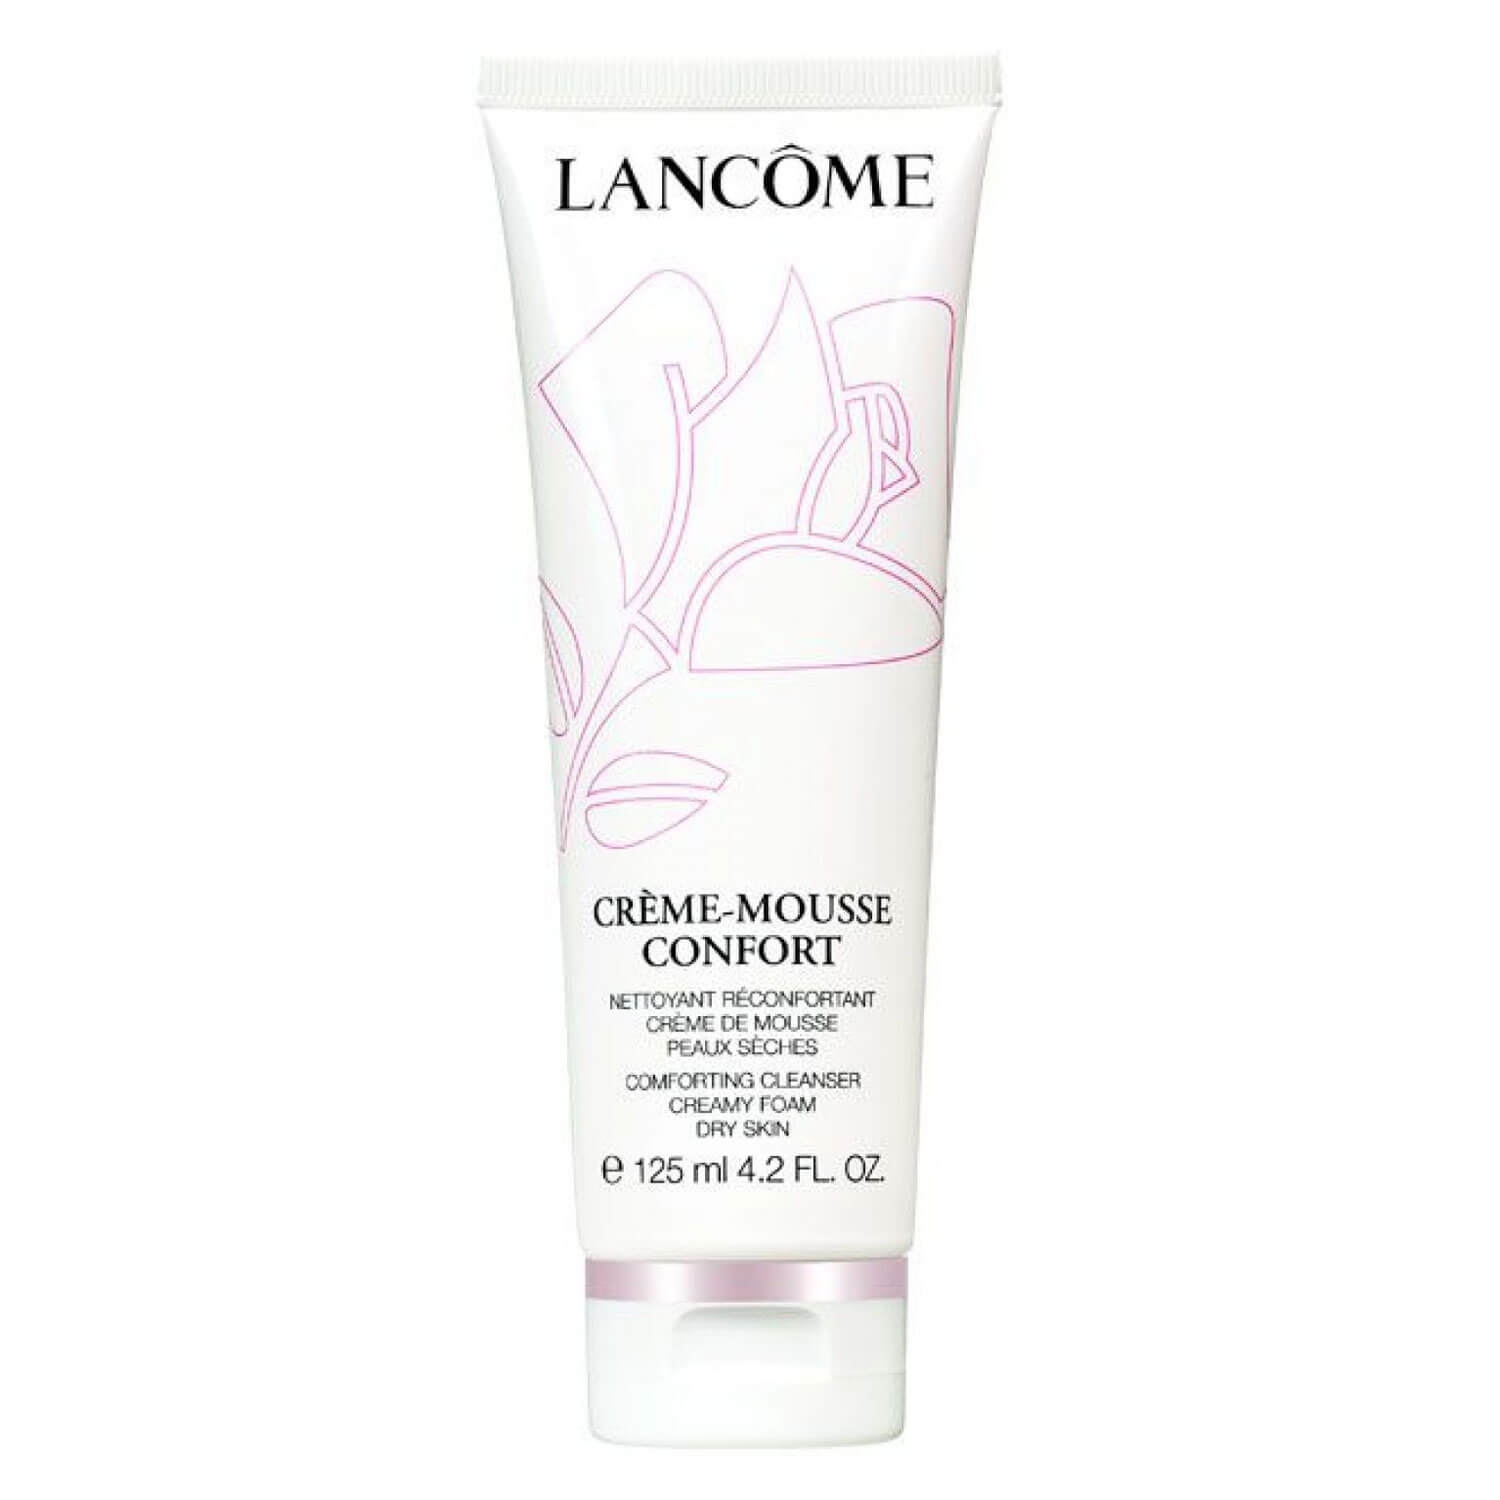 Produktbild von Lancôme Skin - Crème Mousse Confort